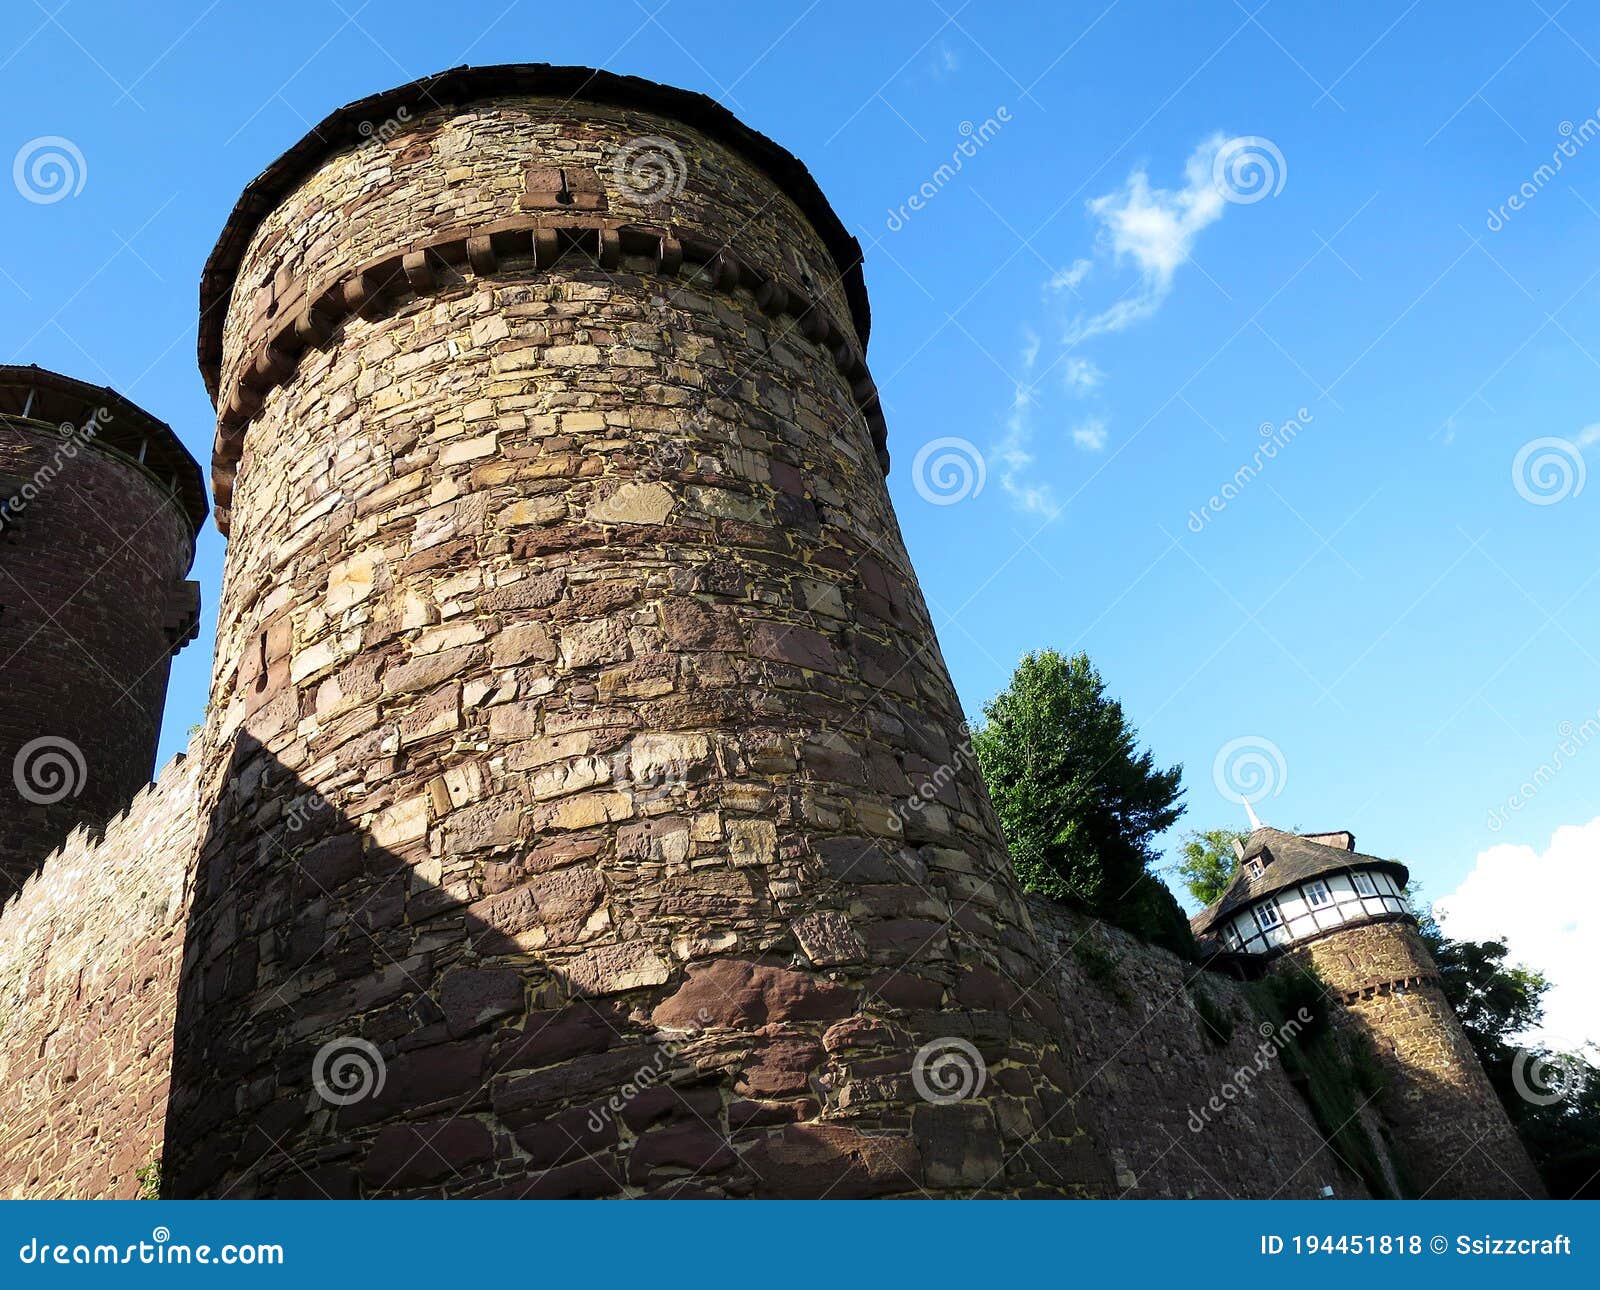 the trendelburg castle in trendelburg, germany